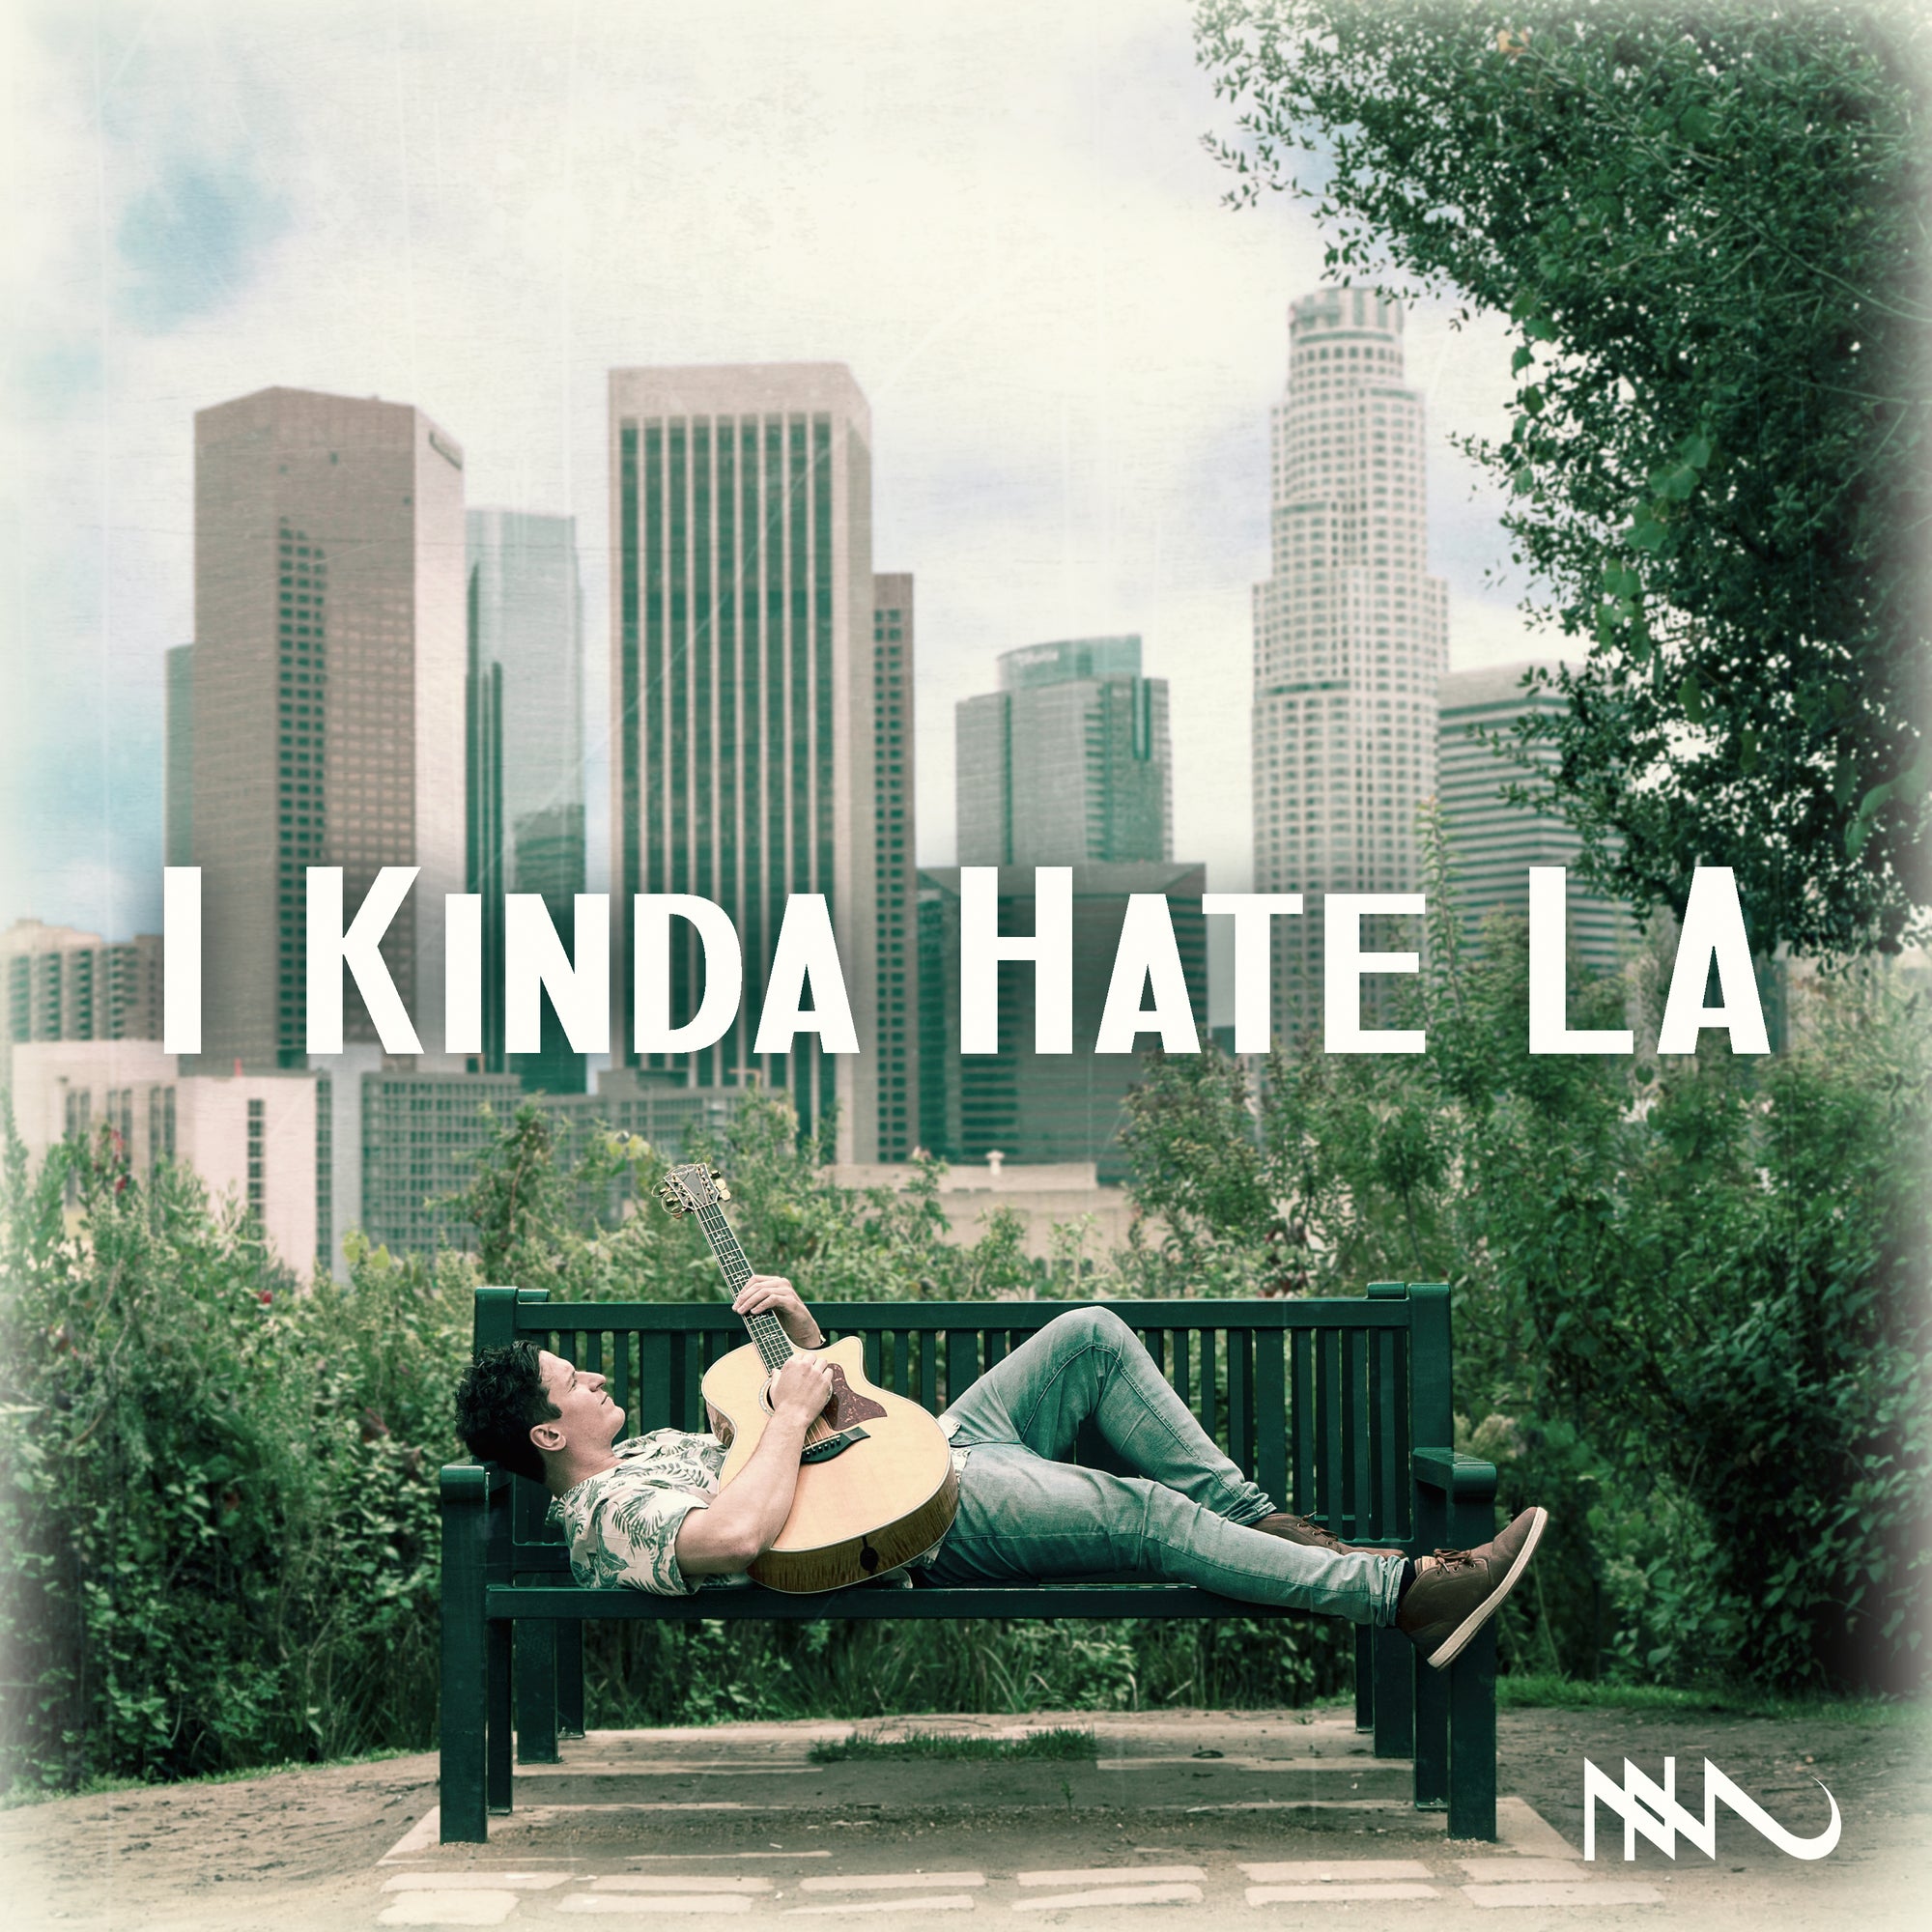 Nick Marzock – ‘I Kinda Hate LA’